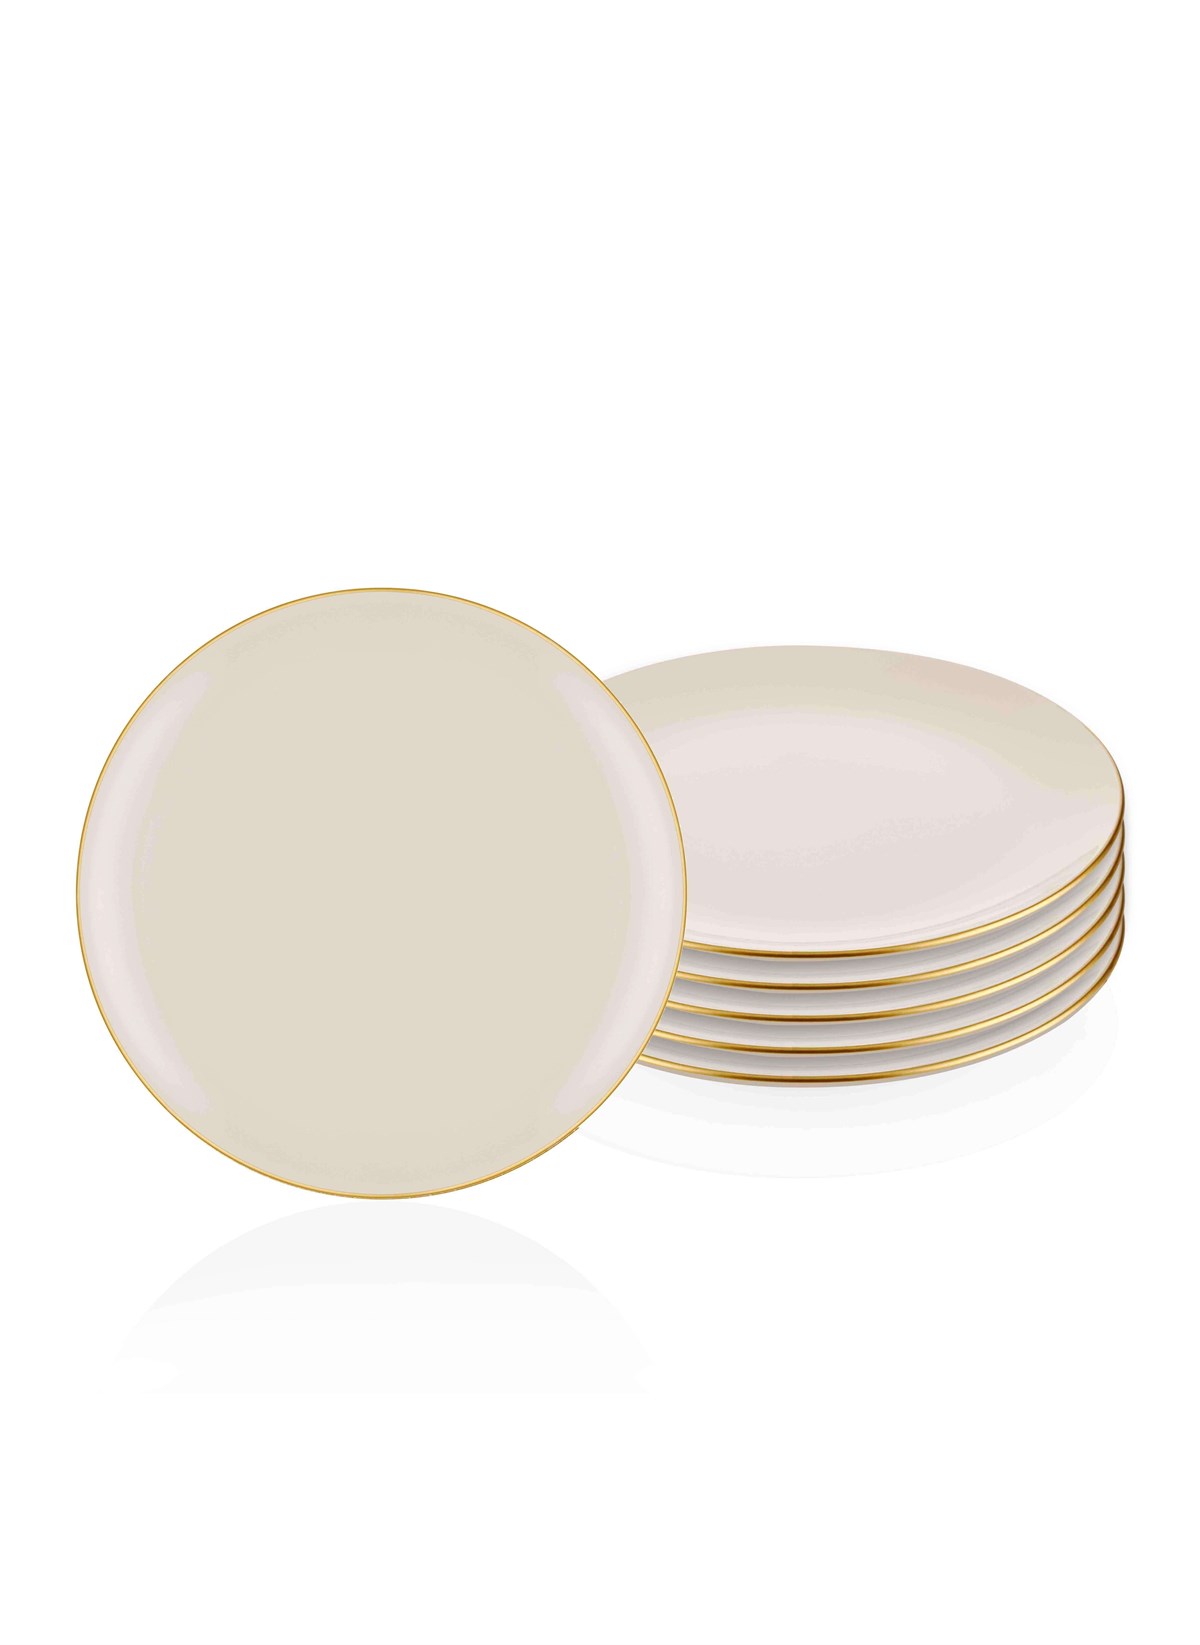 Servis Tabağı 6lı Set Krem Basic Gold Detay Porselen 26 Cm Fiyatları | Joy  Home Accessories